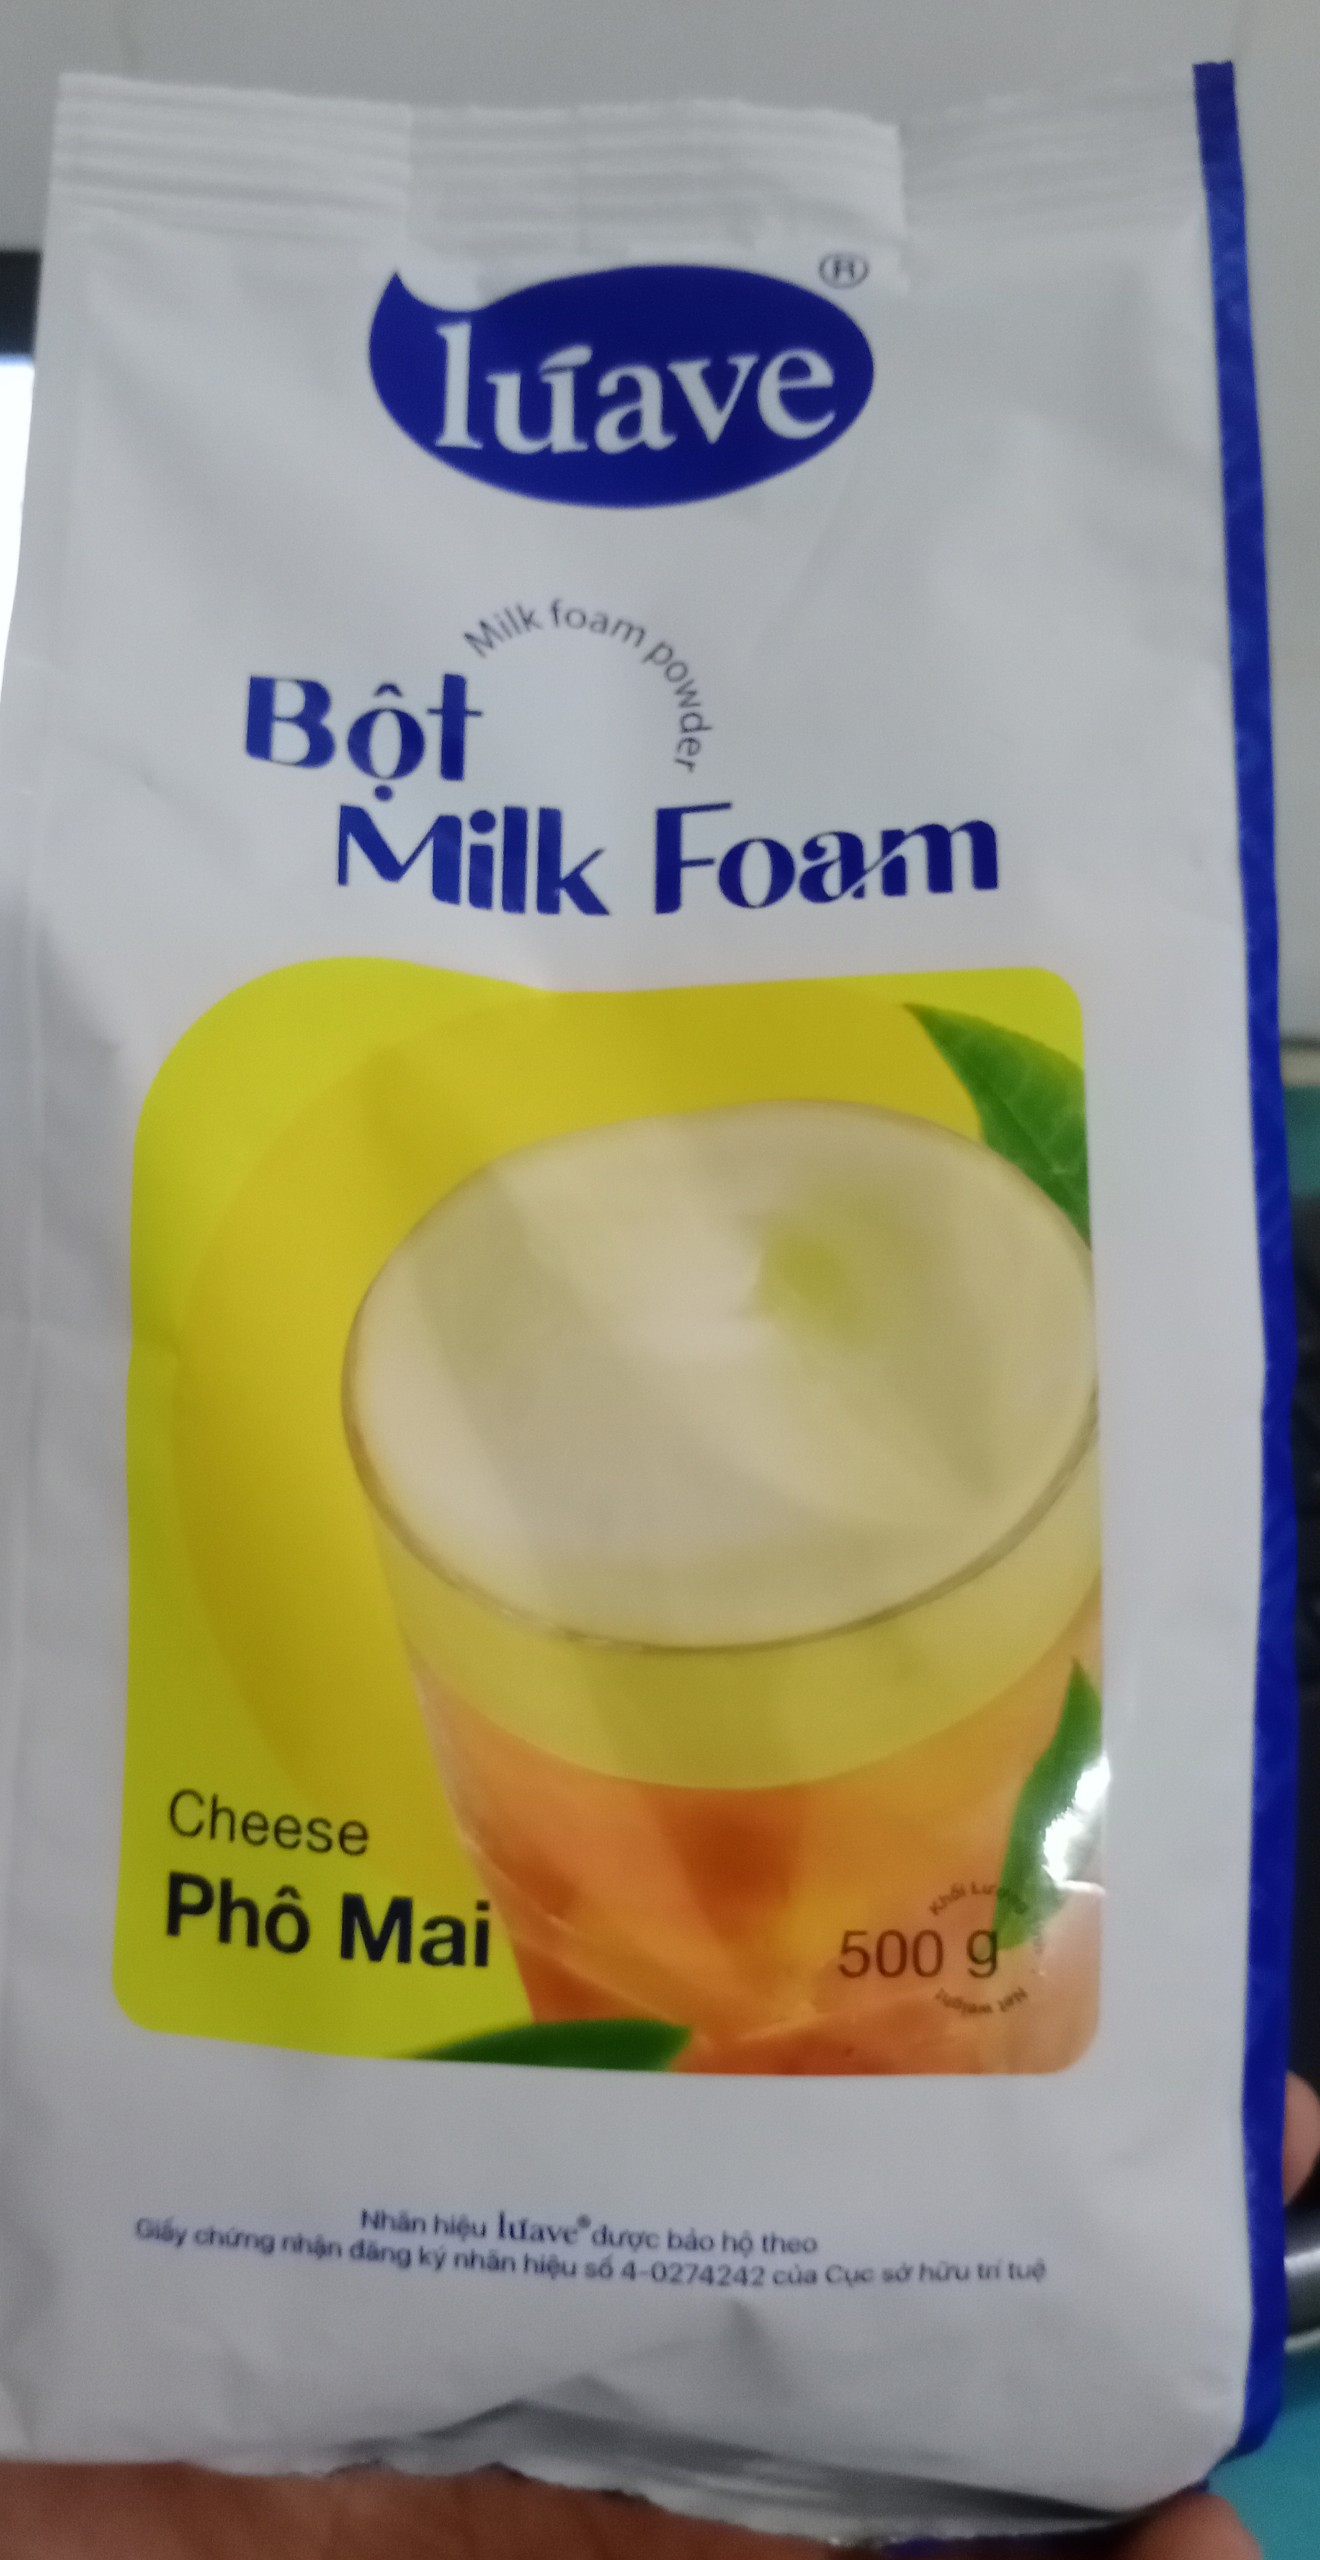 Bột milk foam luave vị fomai gói 500g